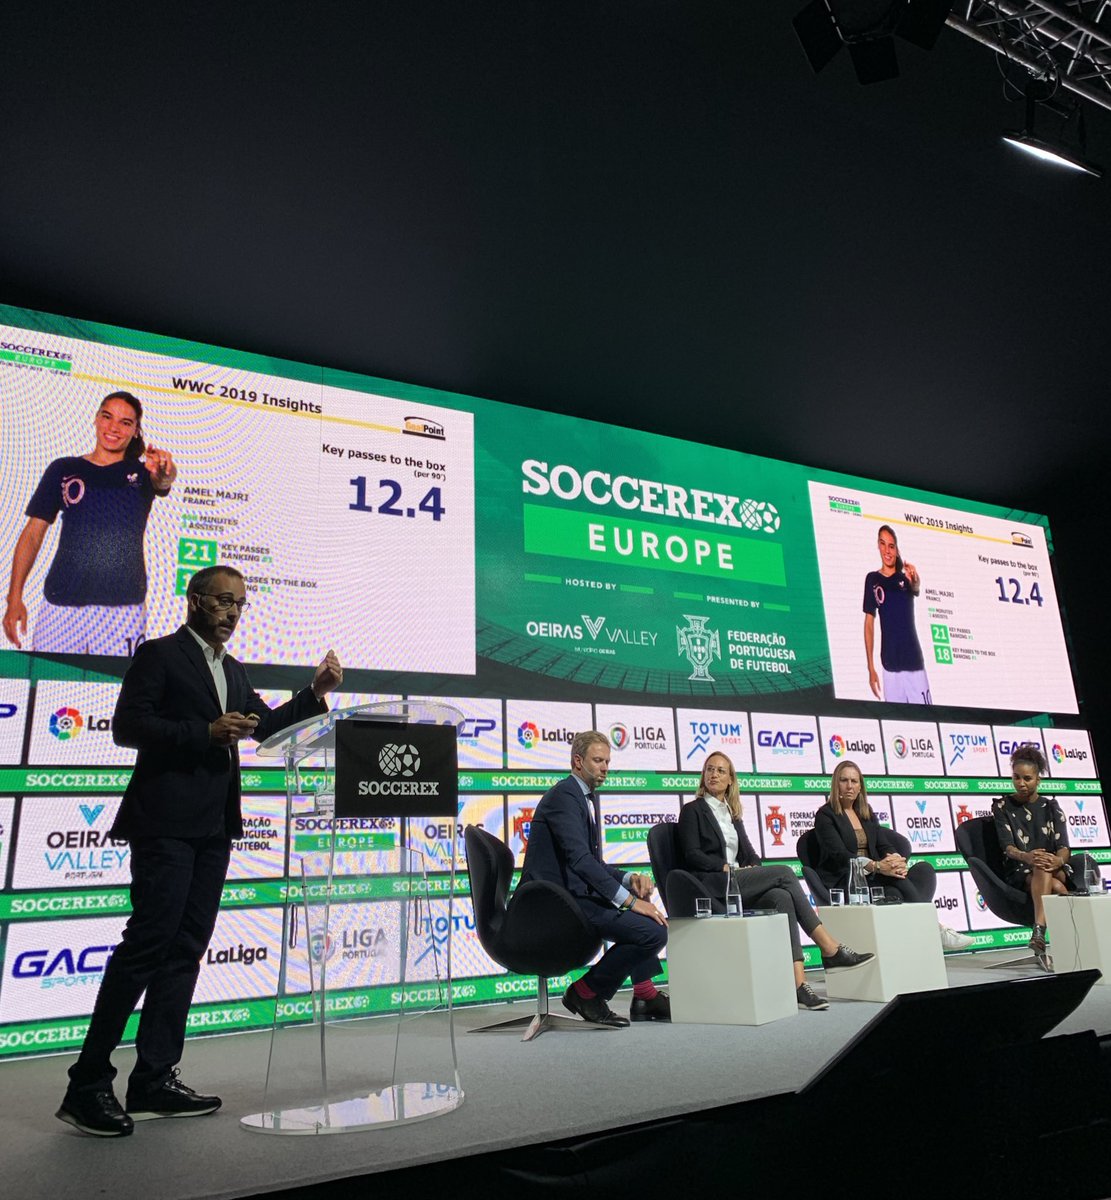 Geldik bakalım, sektörde bilmediğimiz şeyler var mı görelim 🙃☺️

#SoccerexEurope